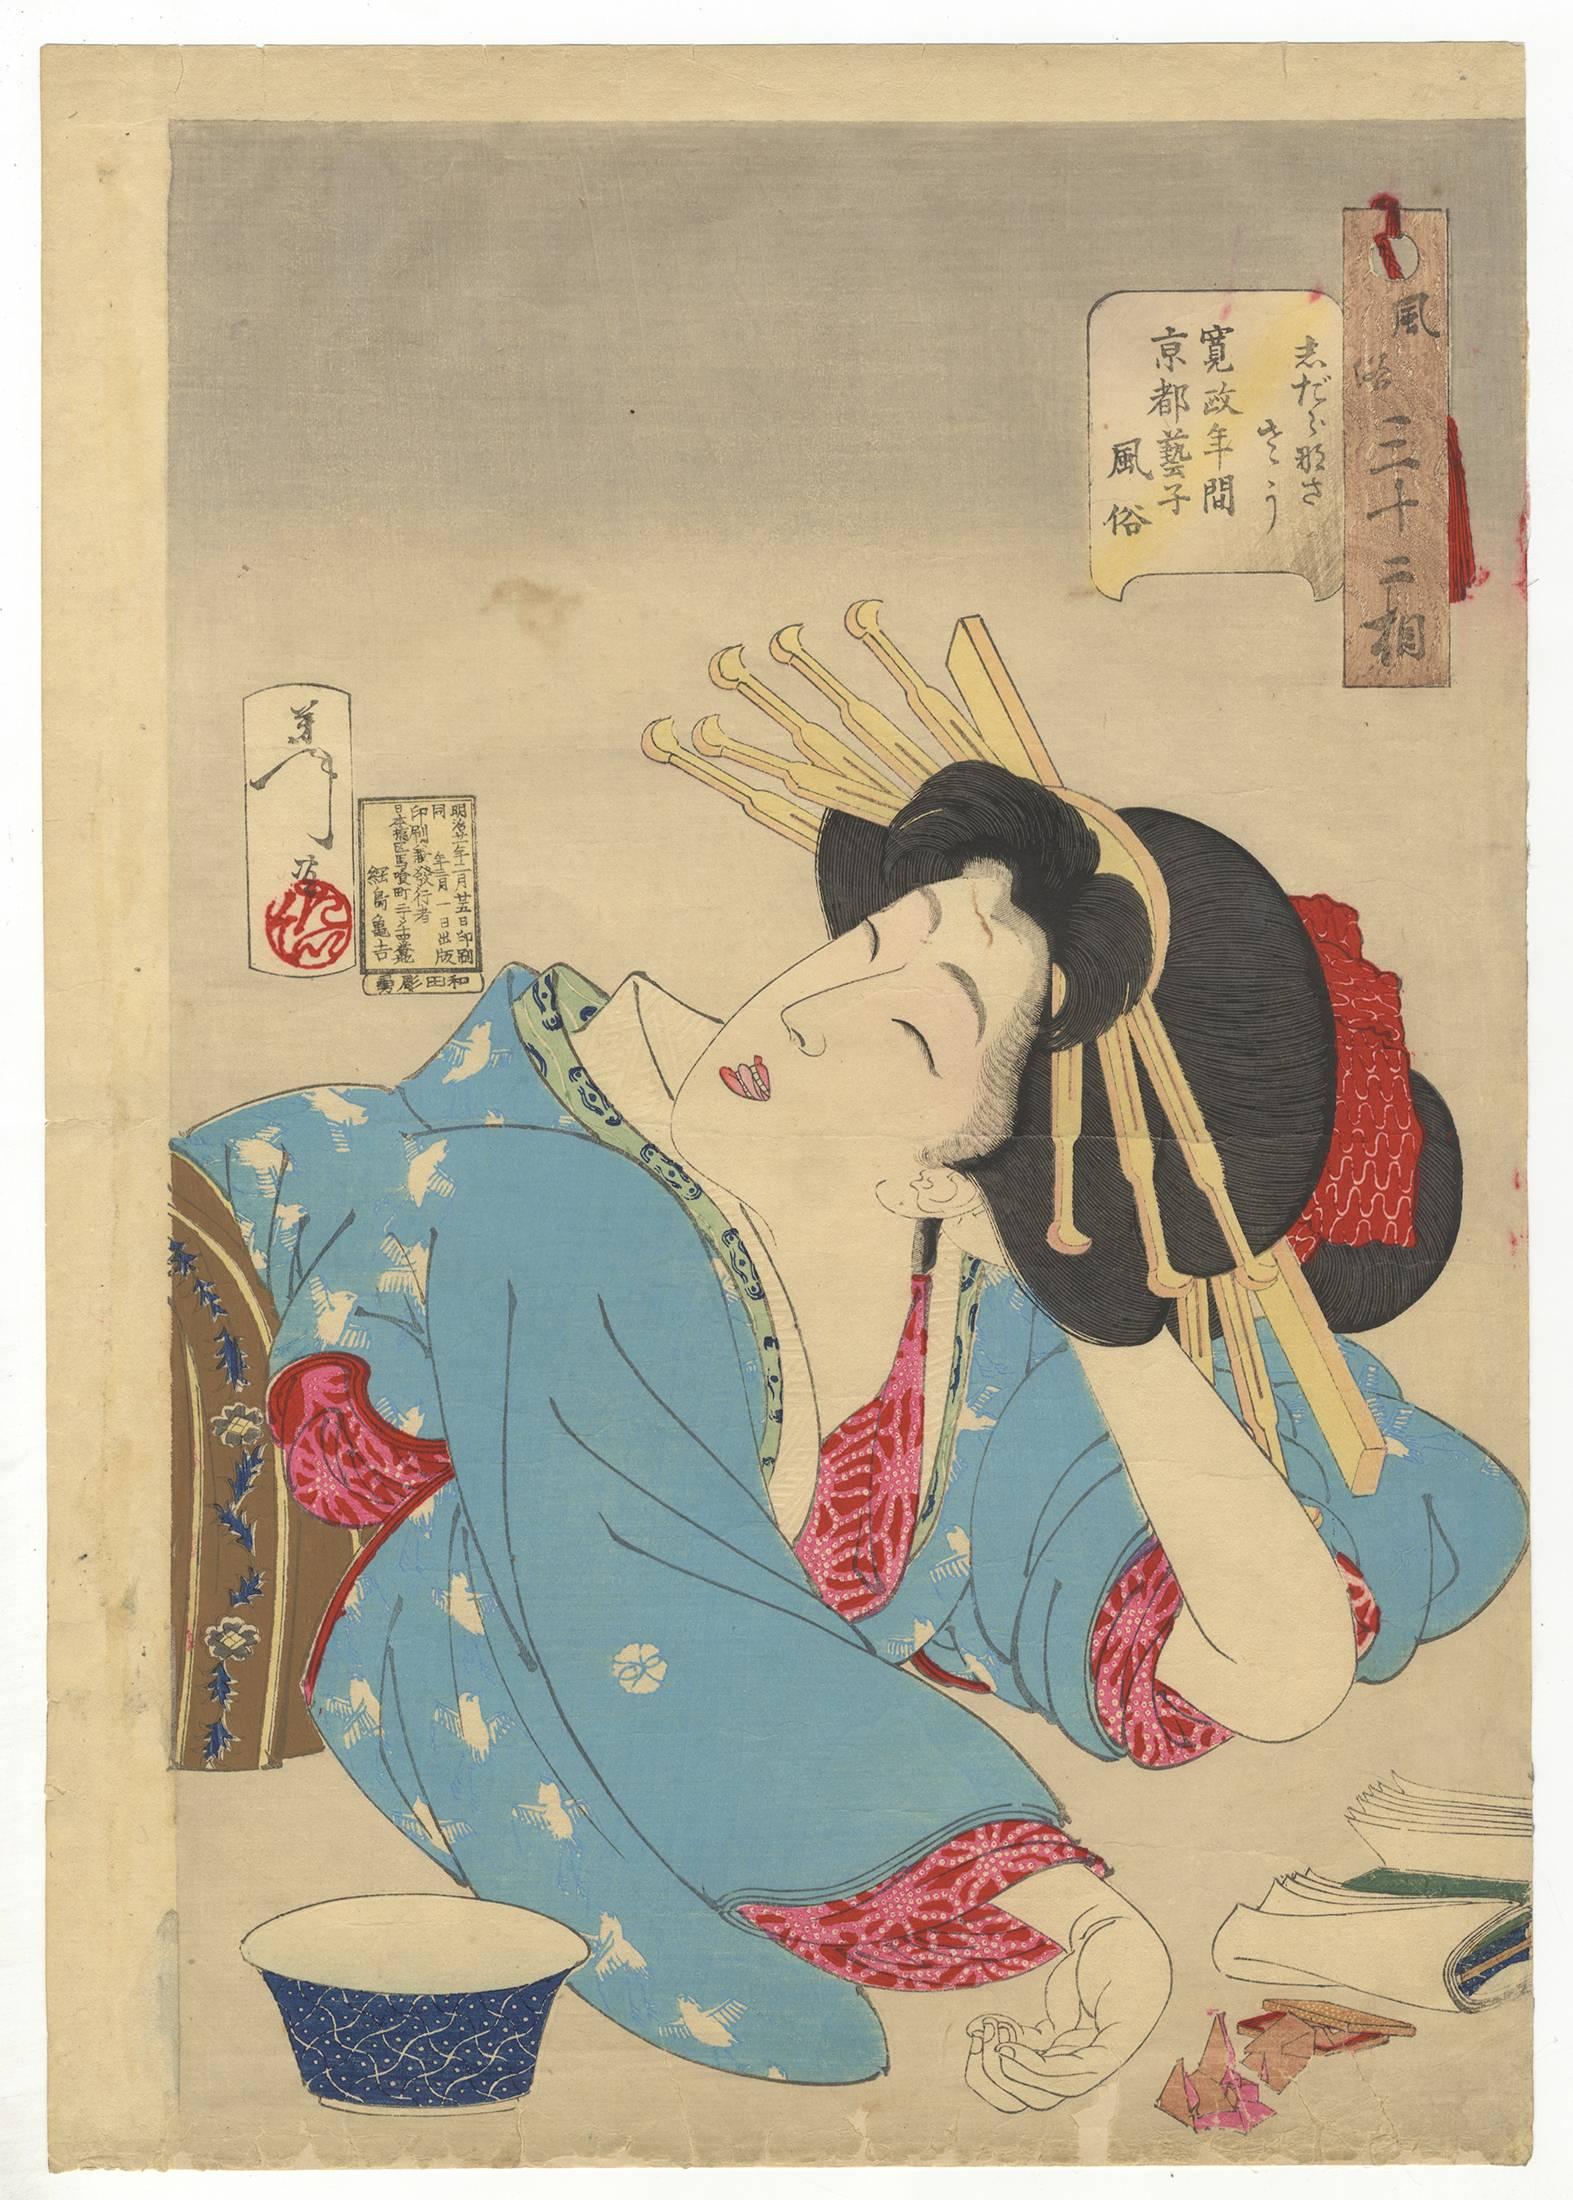 Tsukioka Yoshitoshi Portrait Print - Yoshitoshi, Ukiyo-e, Japanese Woodblock Print, Beauty, Geisha, Meiji, Kyoto 